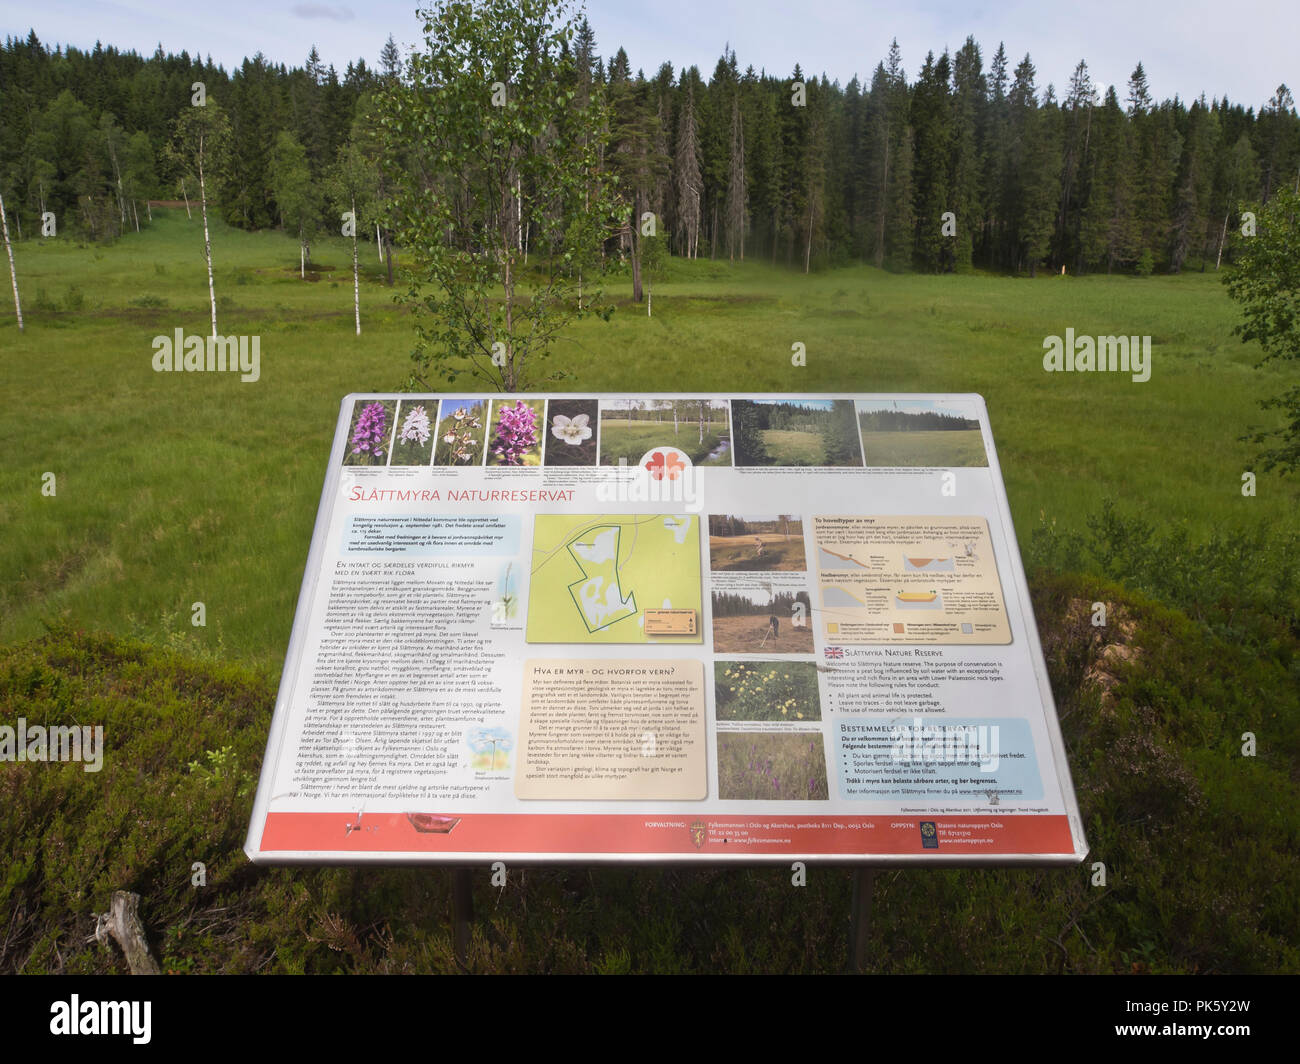 Slåttmyra naturreservat, une réserve naturelle préservant vieille herbe aux techniques de récolte sur les maures, résultant en de nombreuses espèces d'orchidées, Oslo Norvège Banque D'Images